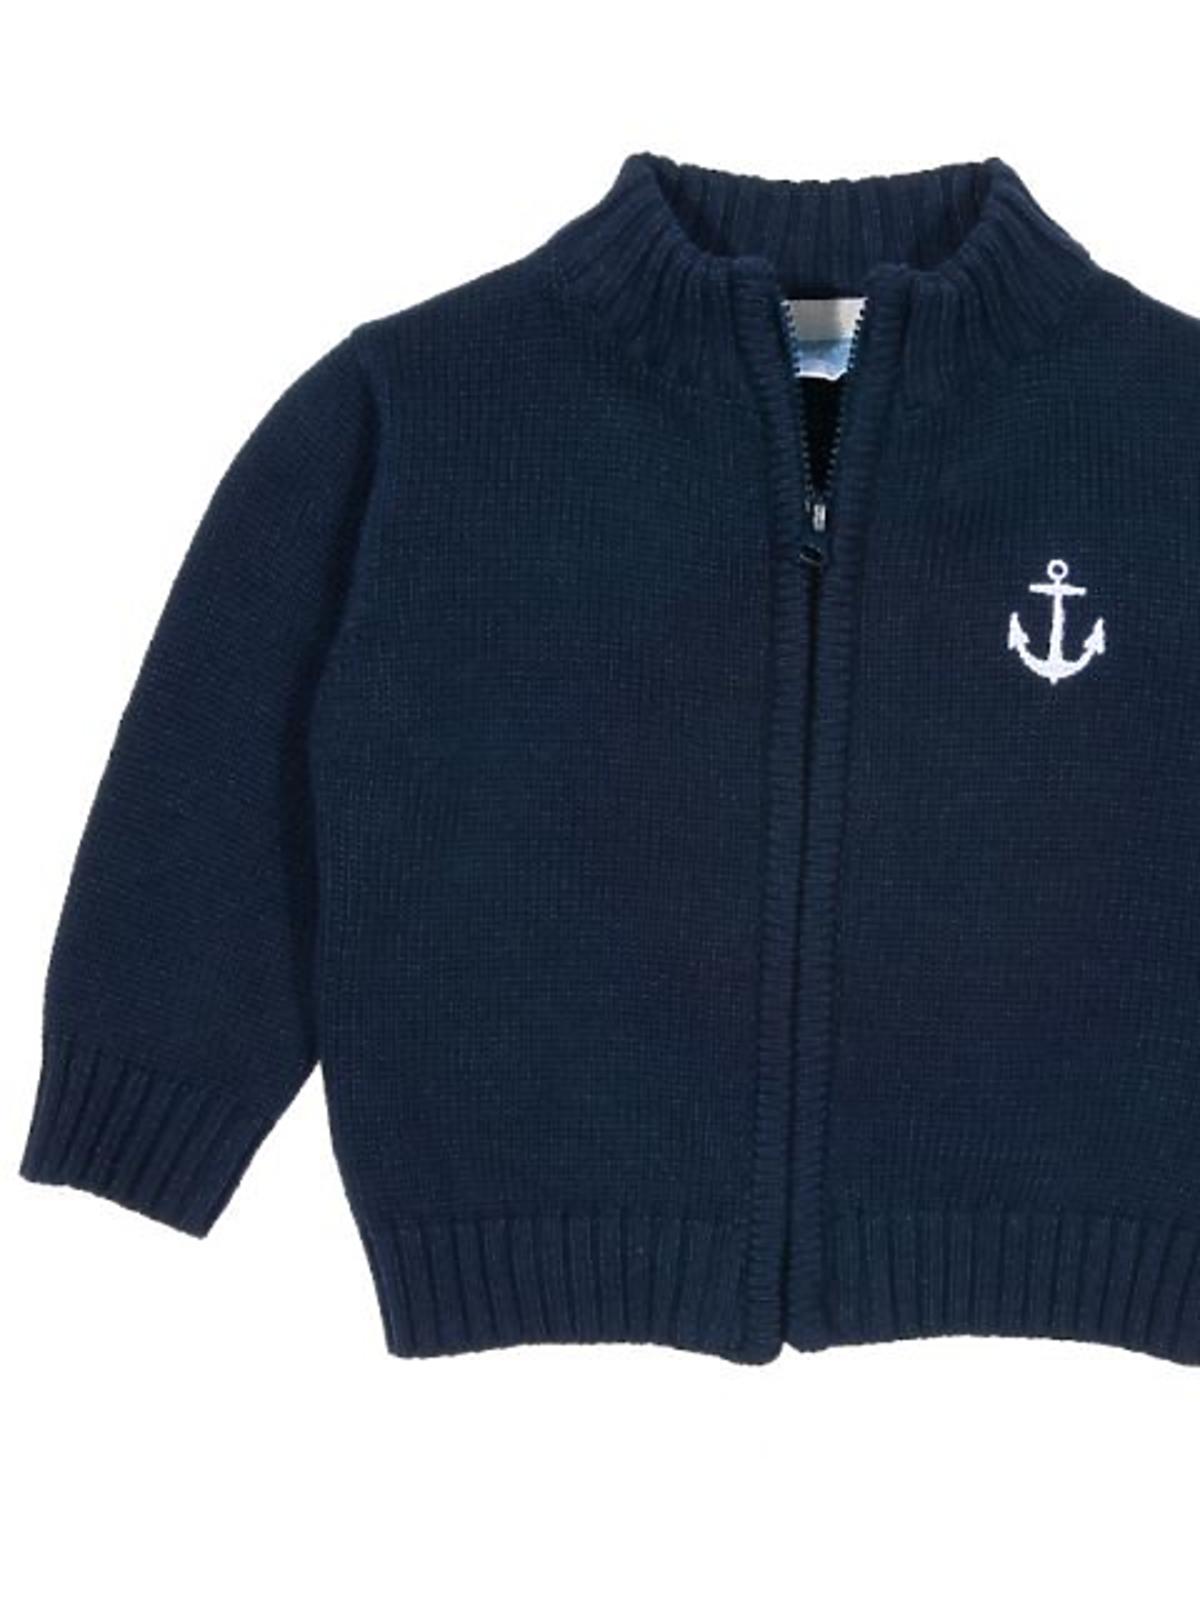 sweter-dla-niemowlaka_-cena-54,99zl.jpg